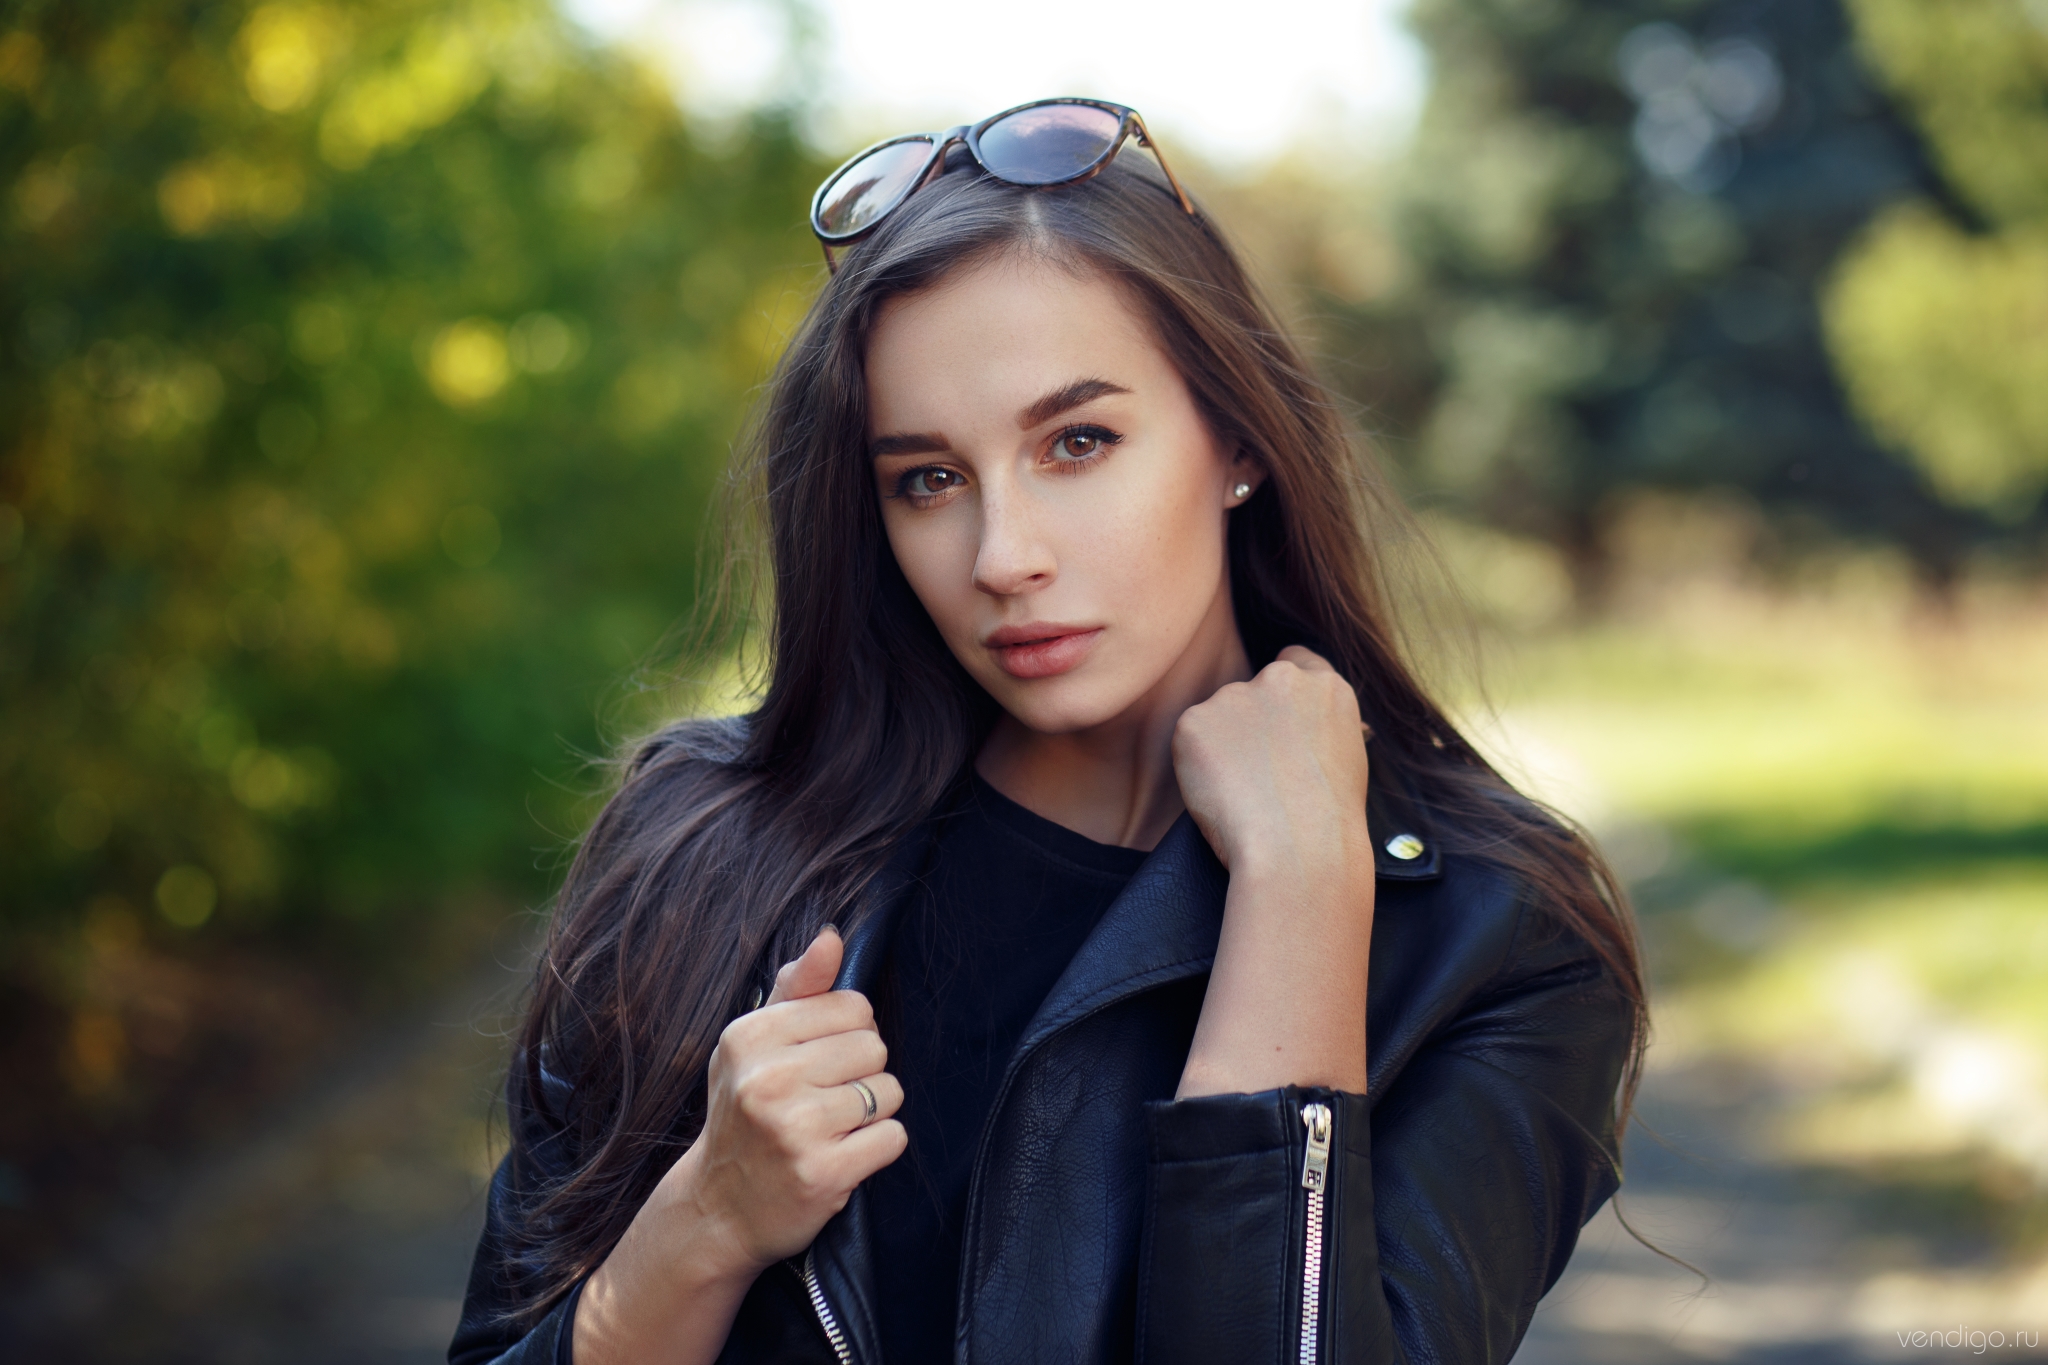 Evgeniy Bulatov Women Model Brunette Long Hair Portrait Outdoors Looking At Viewer Brown Eyes